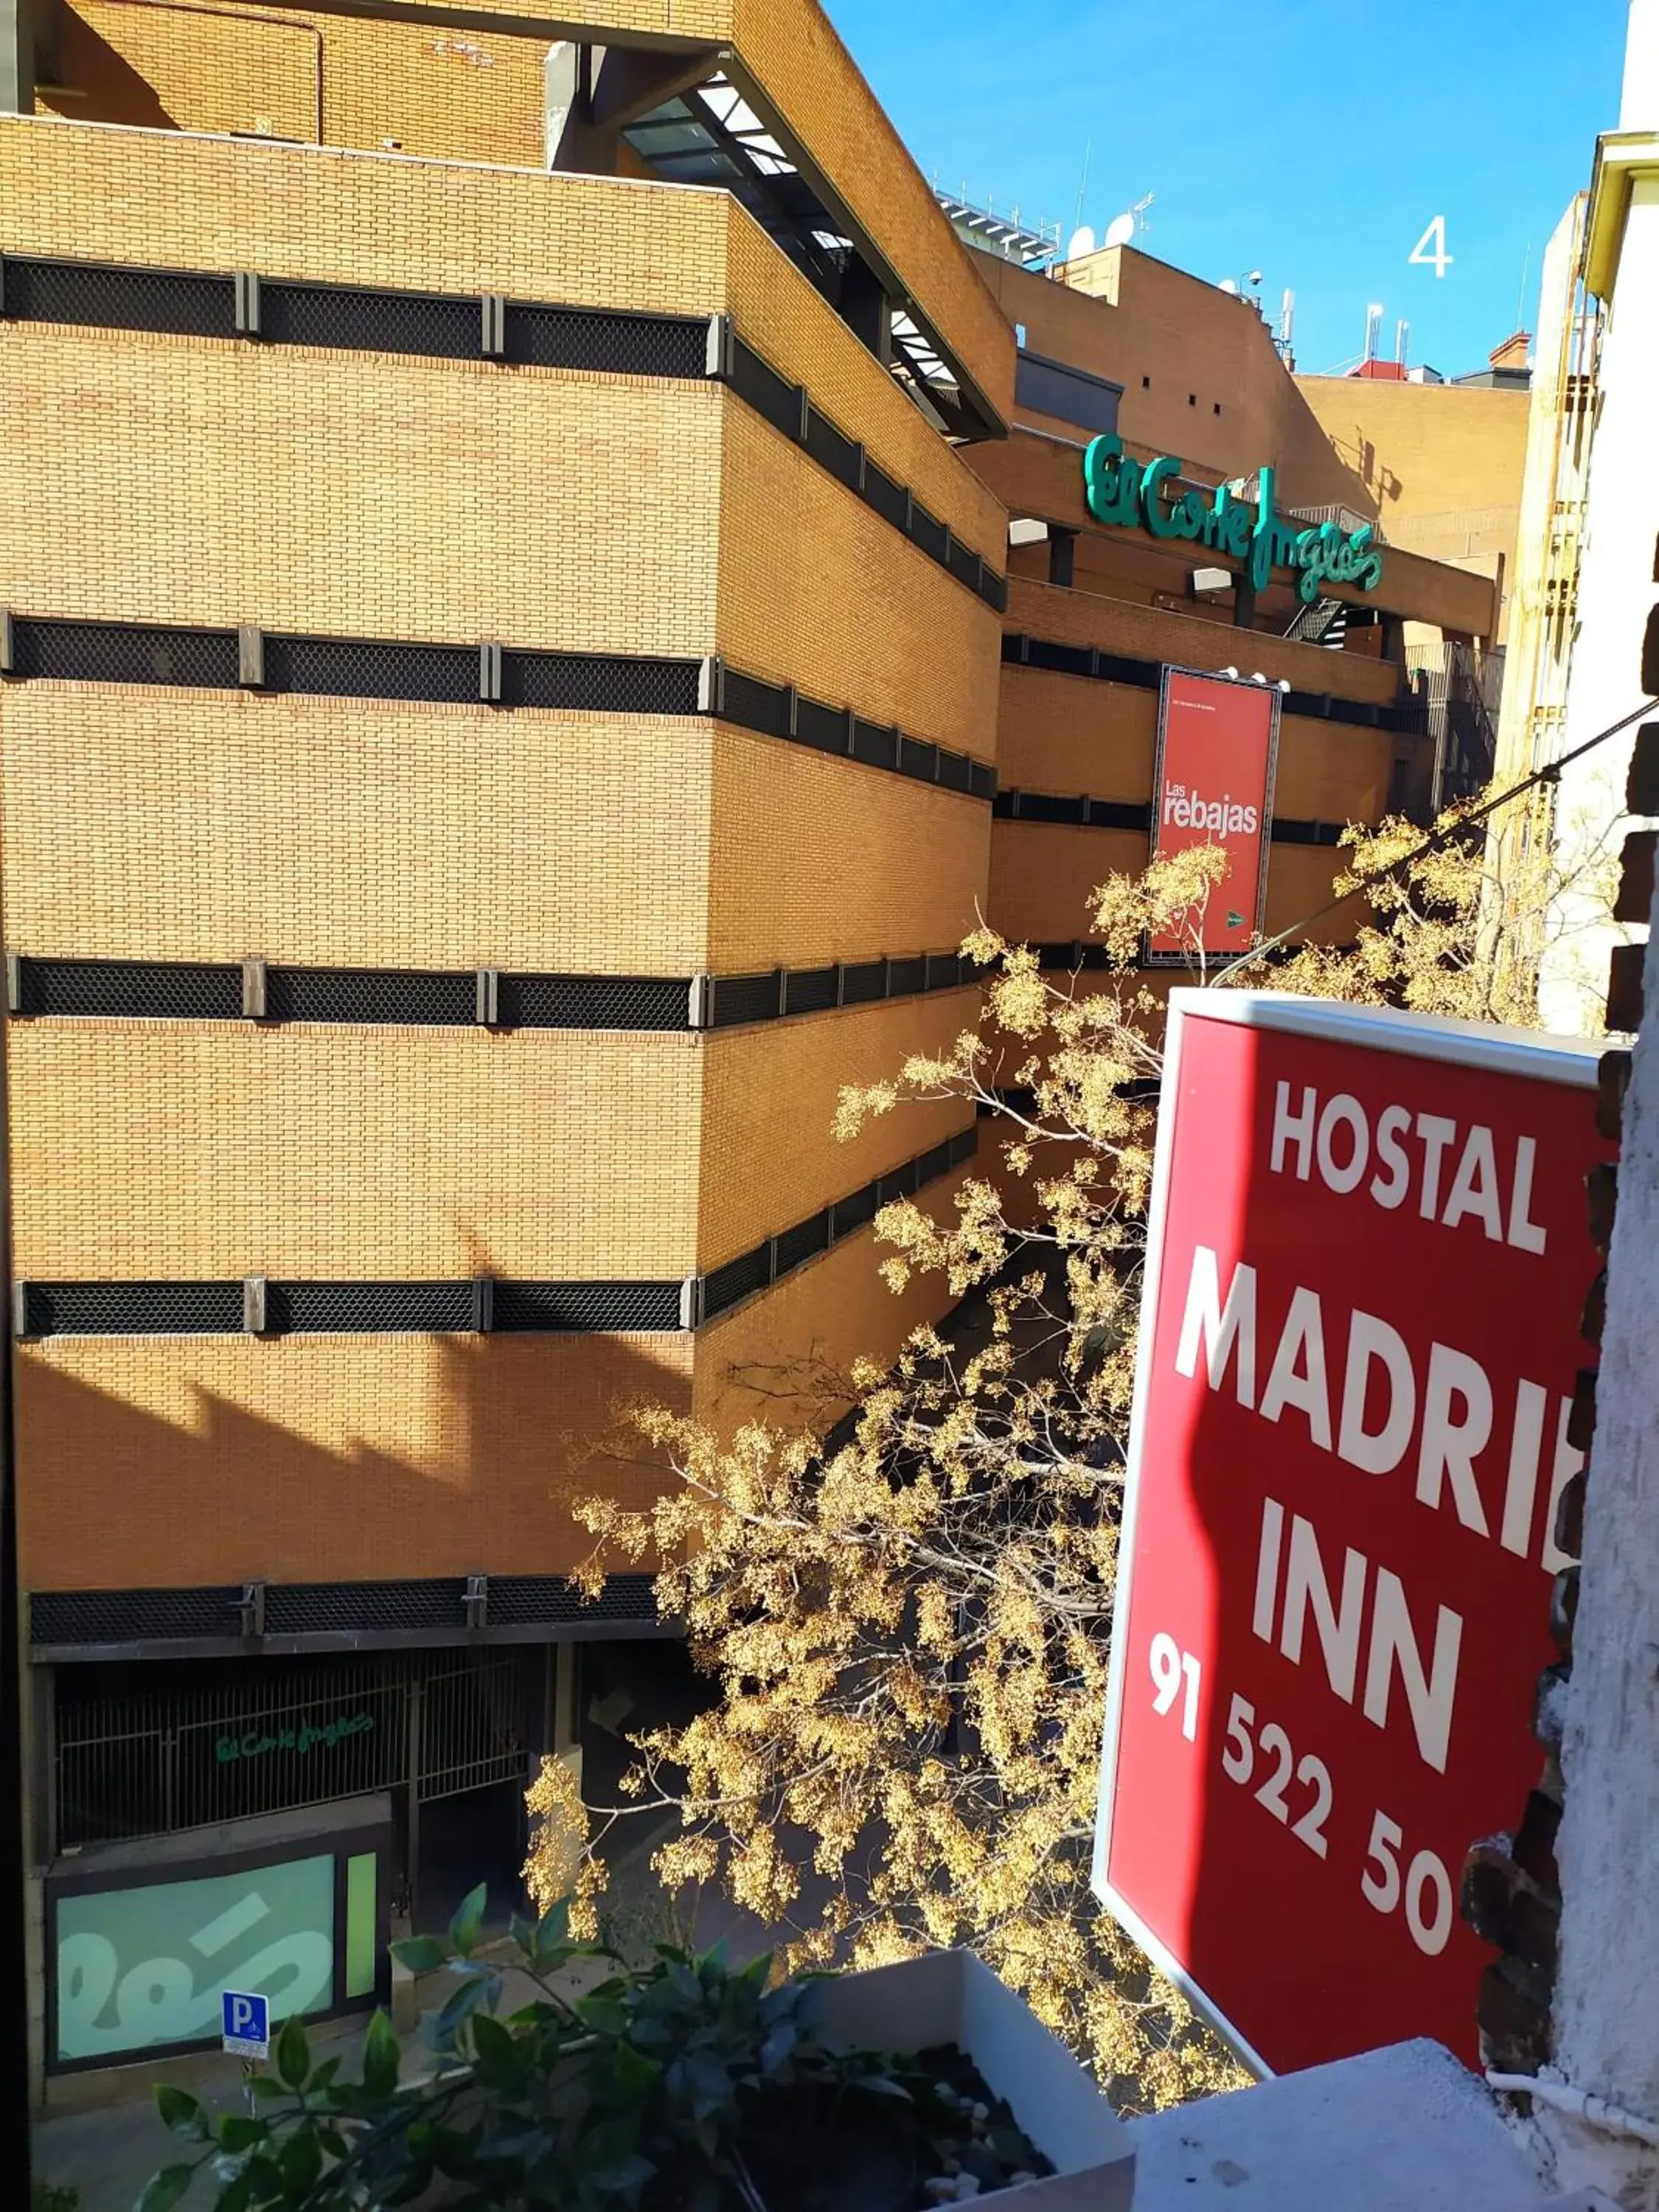 Property logo or sign in Hostal Inn Madrid